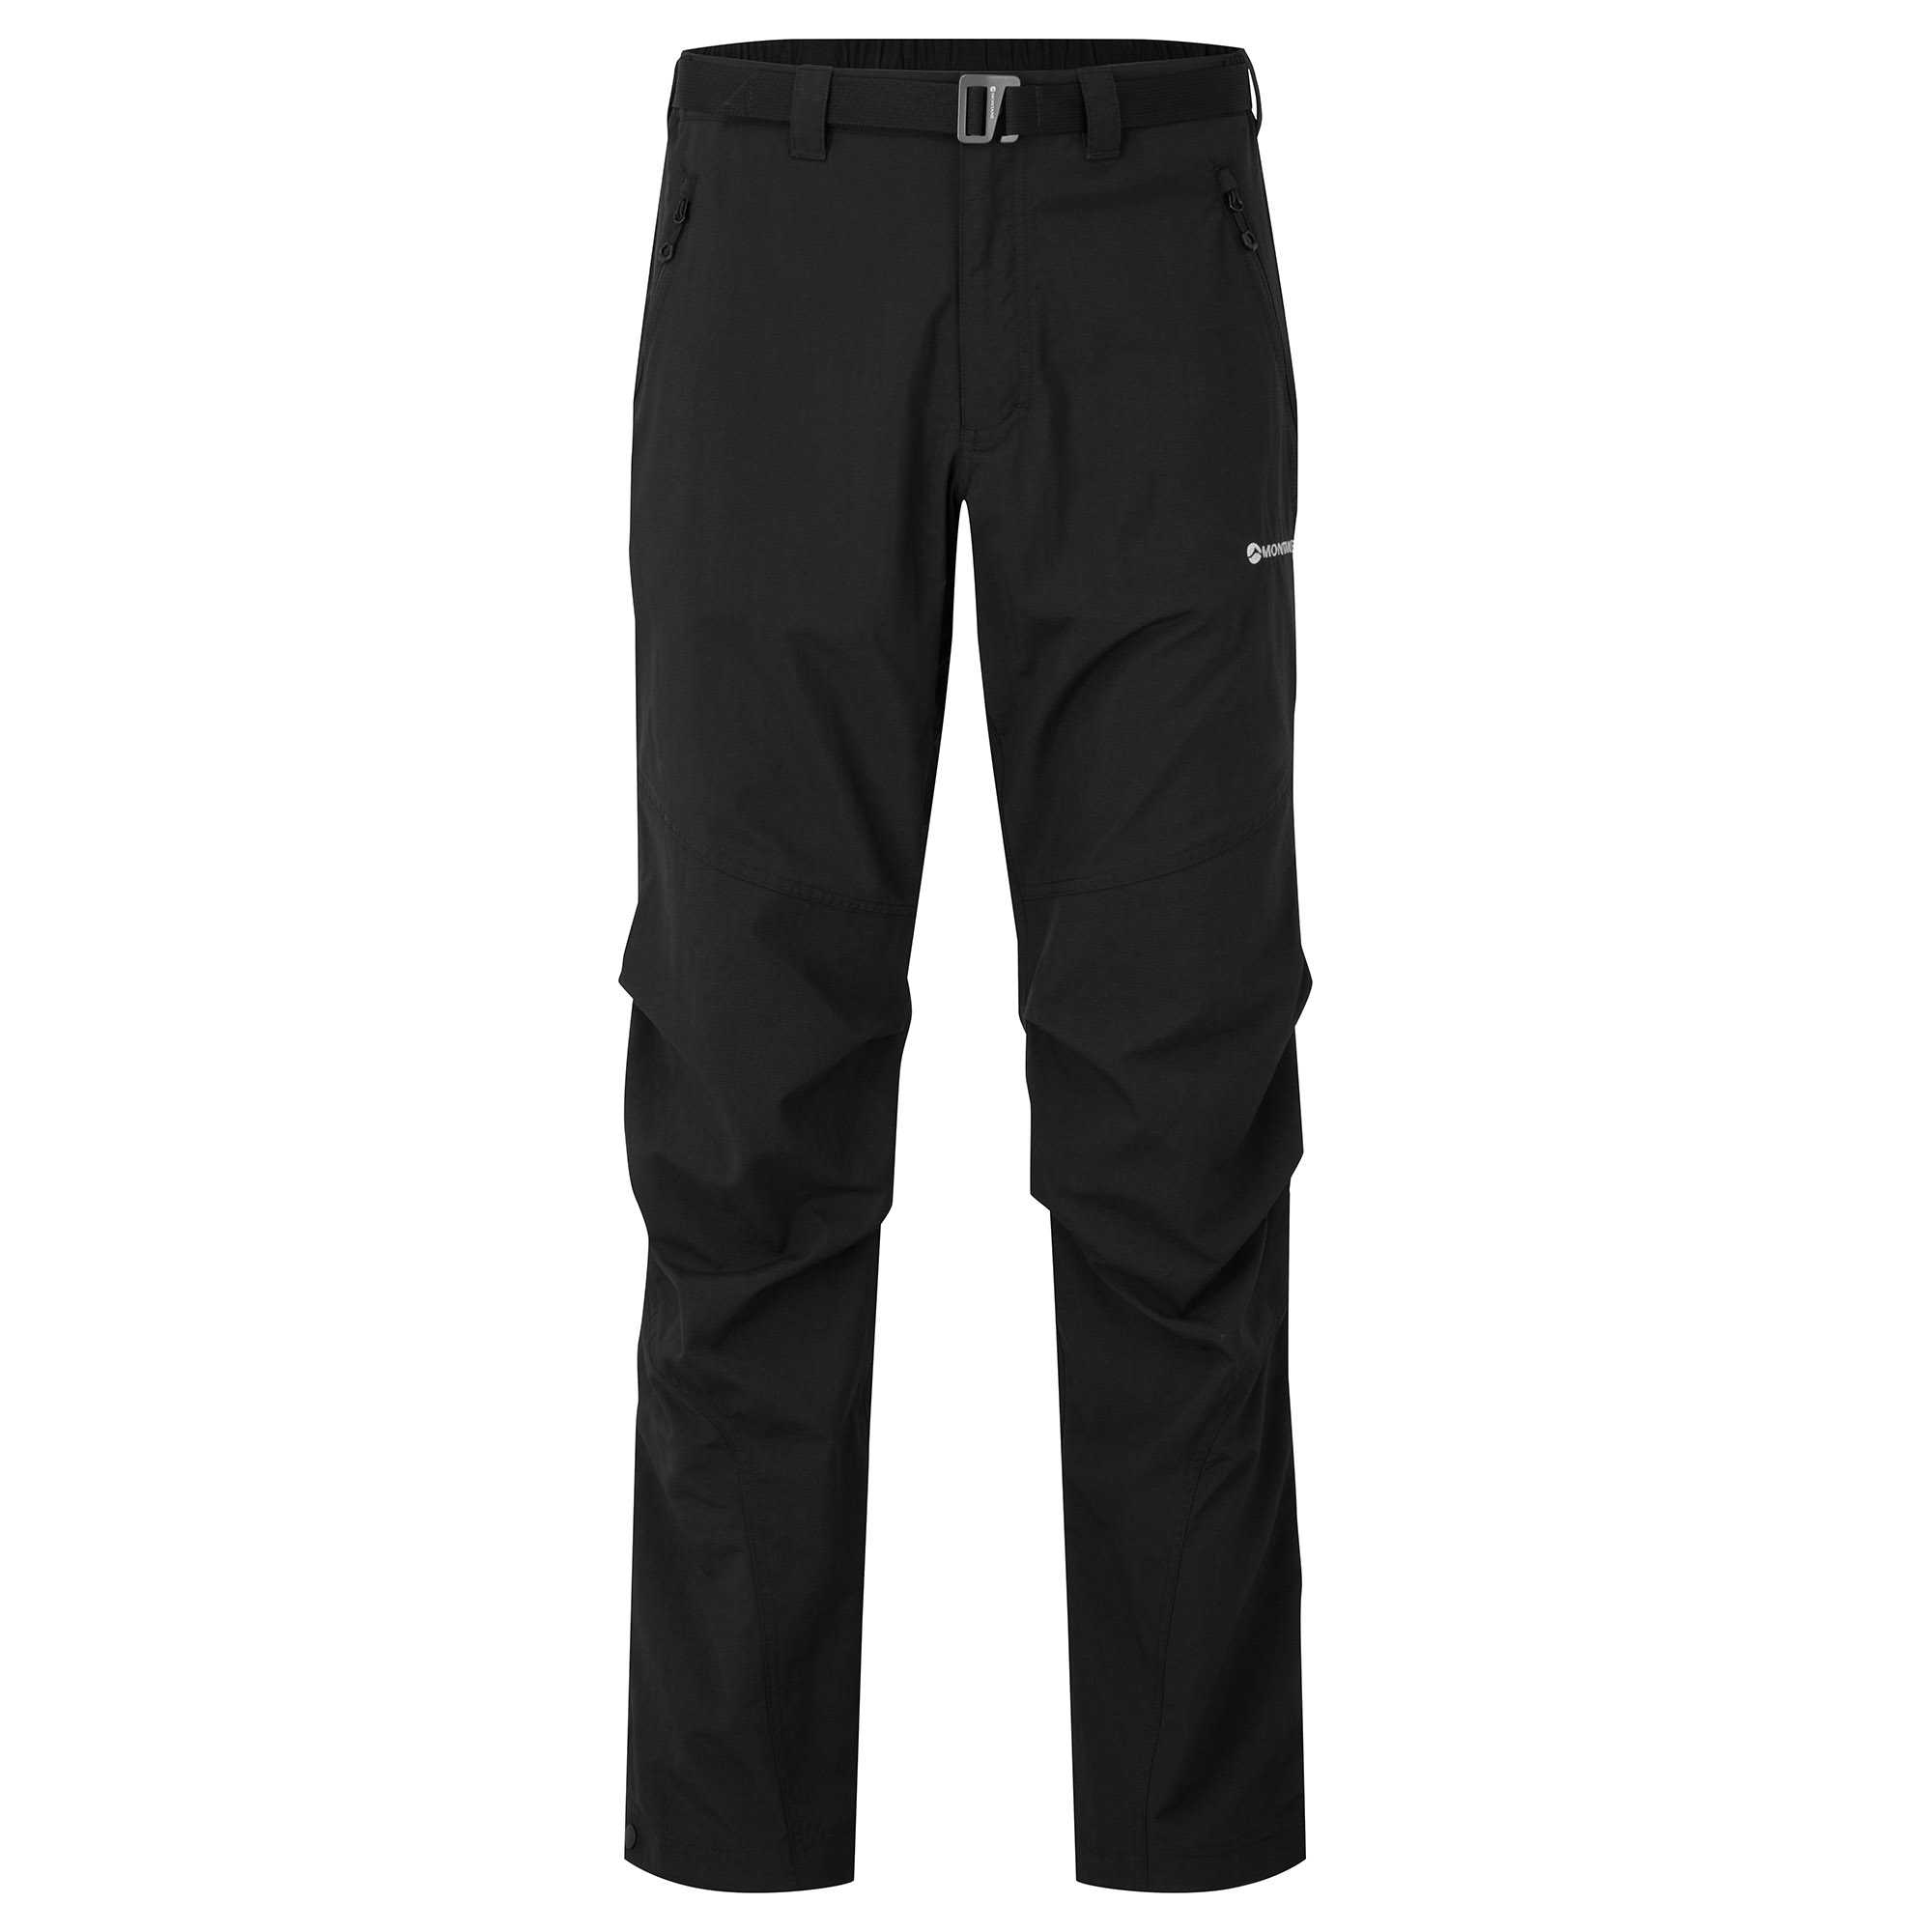 Montane pánské softshellové kalhoty Terra Pants - Prodloužené Nohavice Barva: black, Velikost: 36